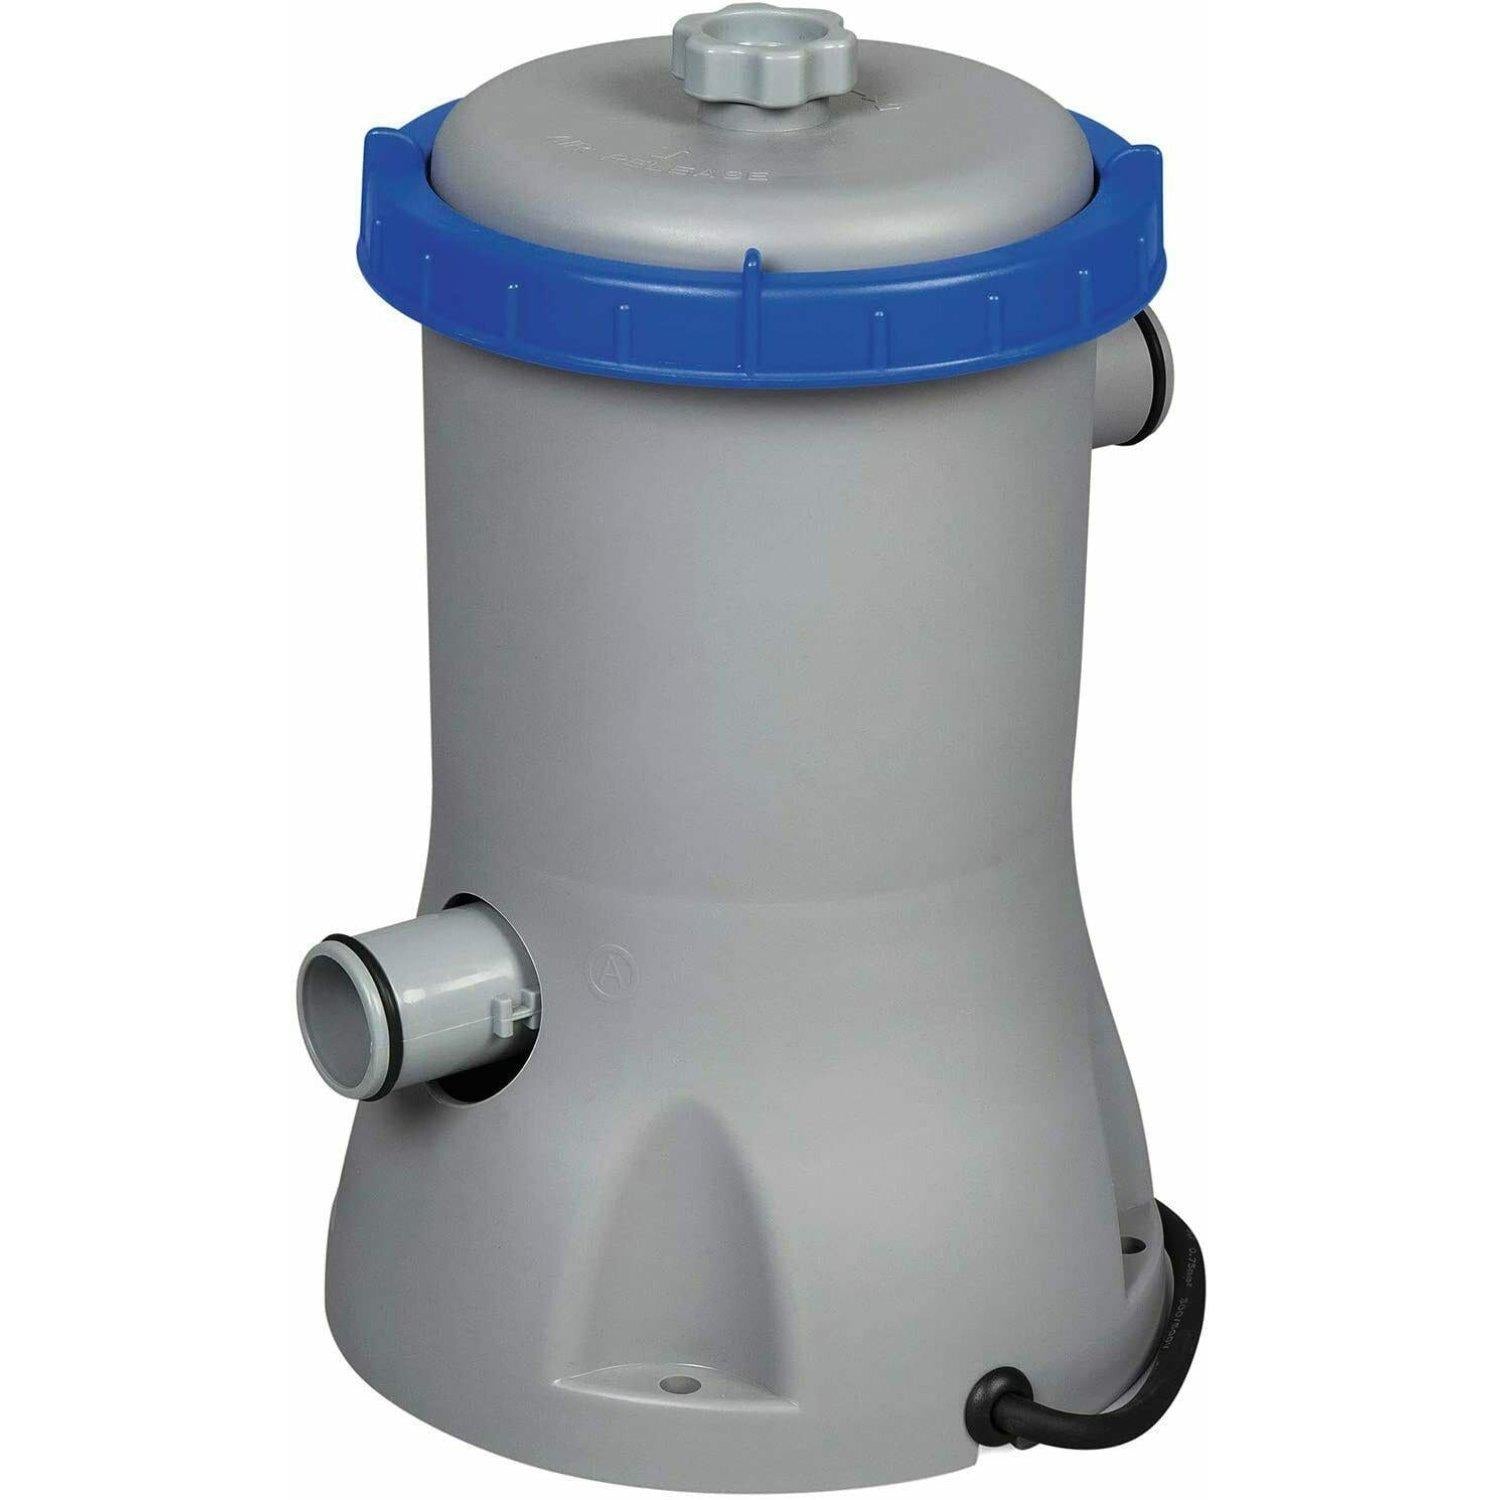 Bestway Flowclear 530gal Filter Pool Pump